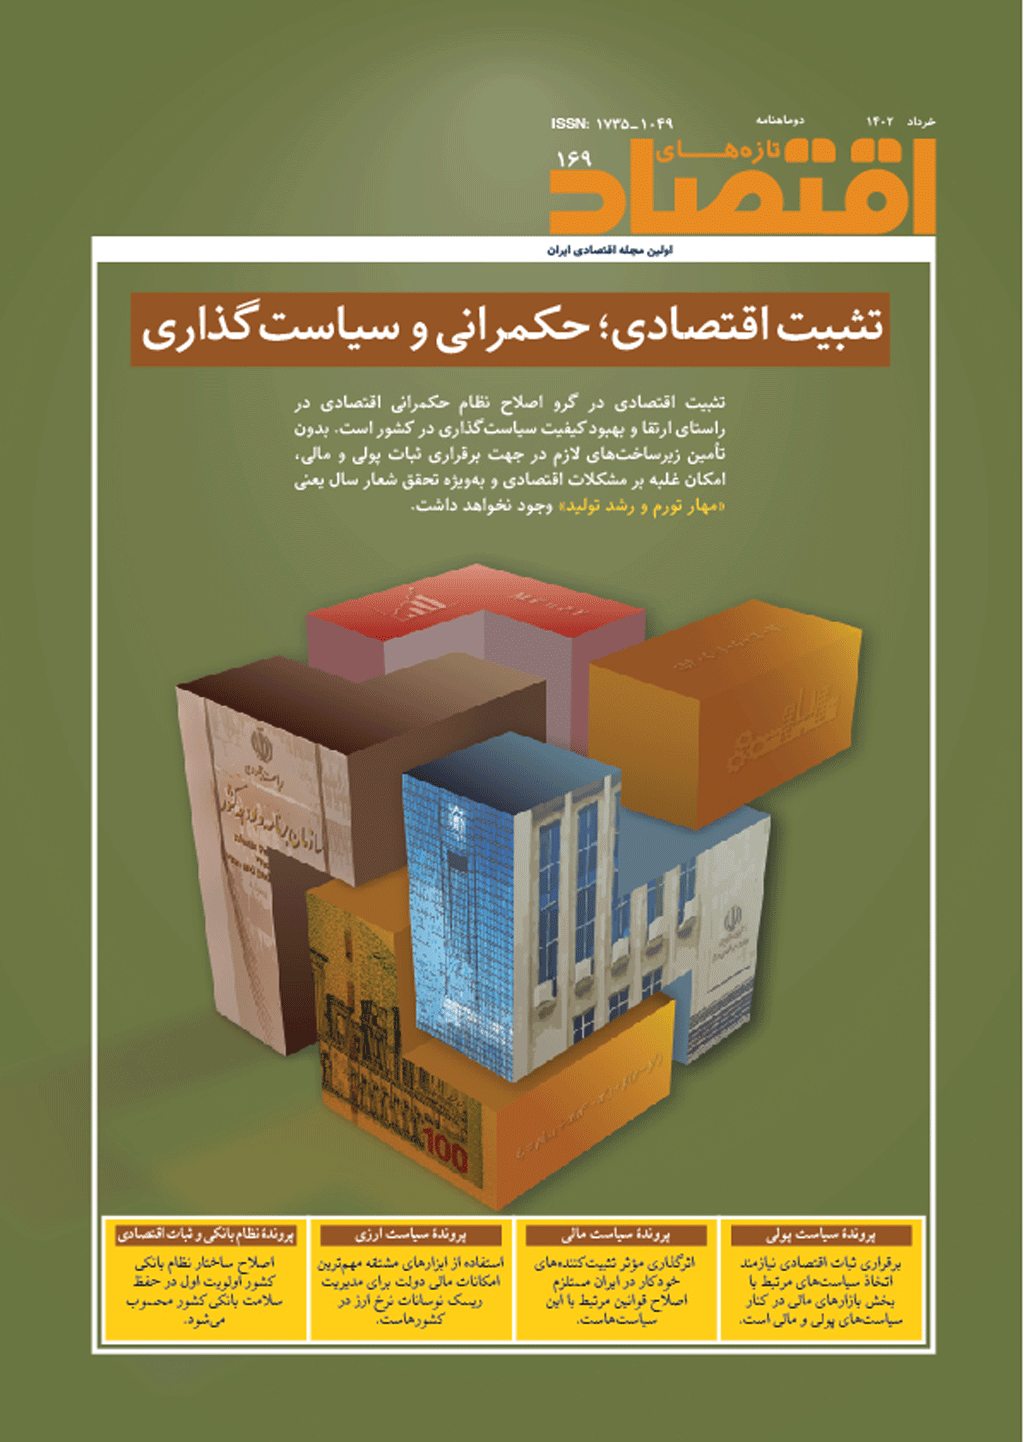 تازه‌ های اقتصاد - بهمن 1369 - شماره 14